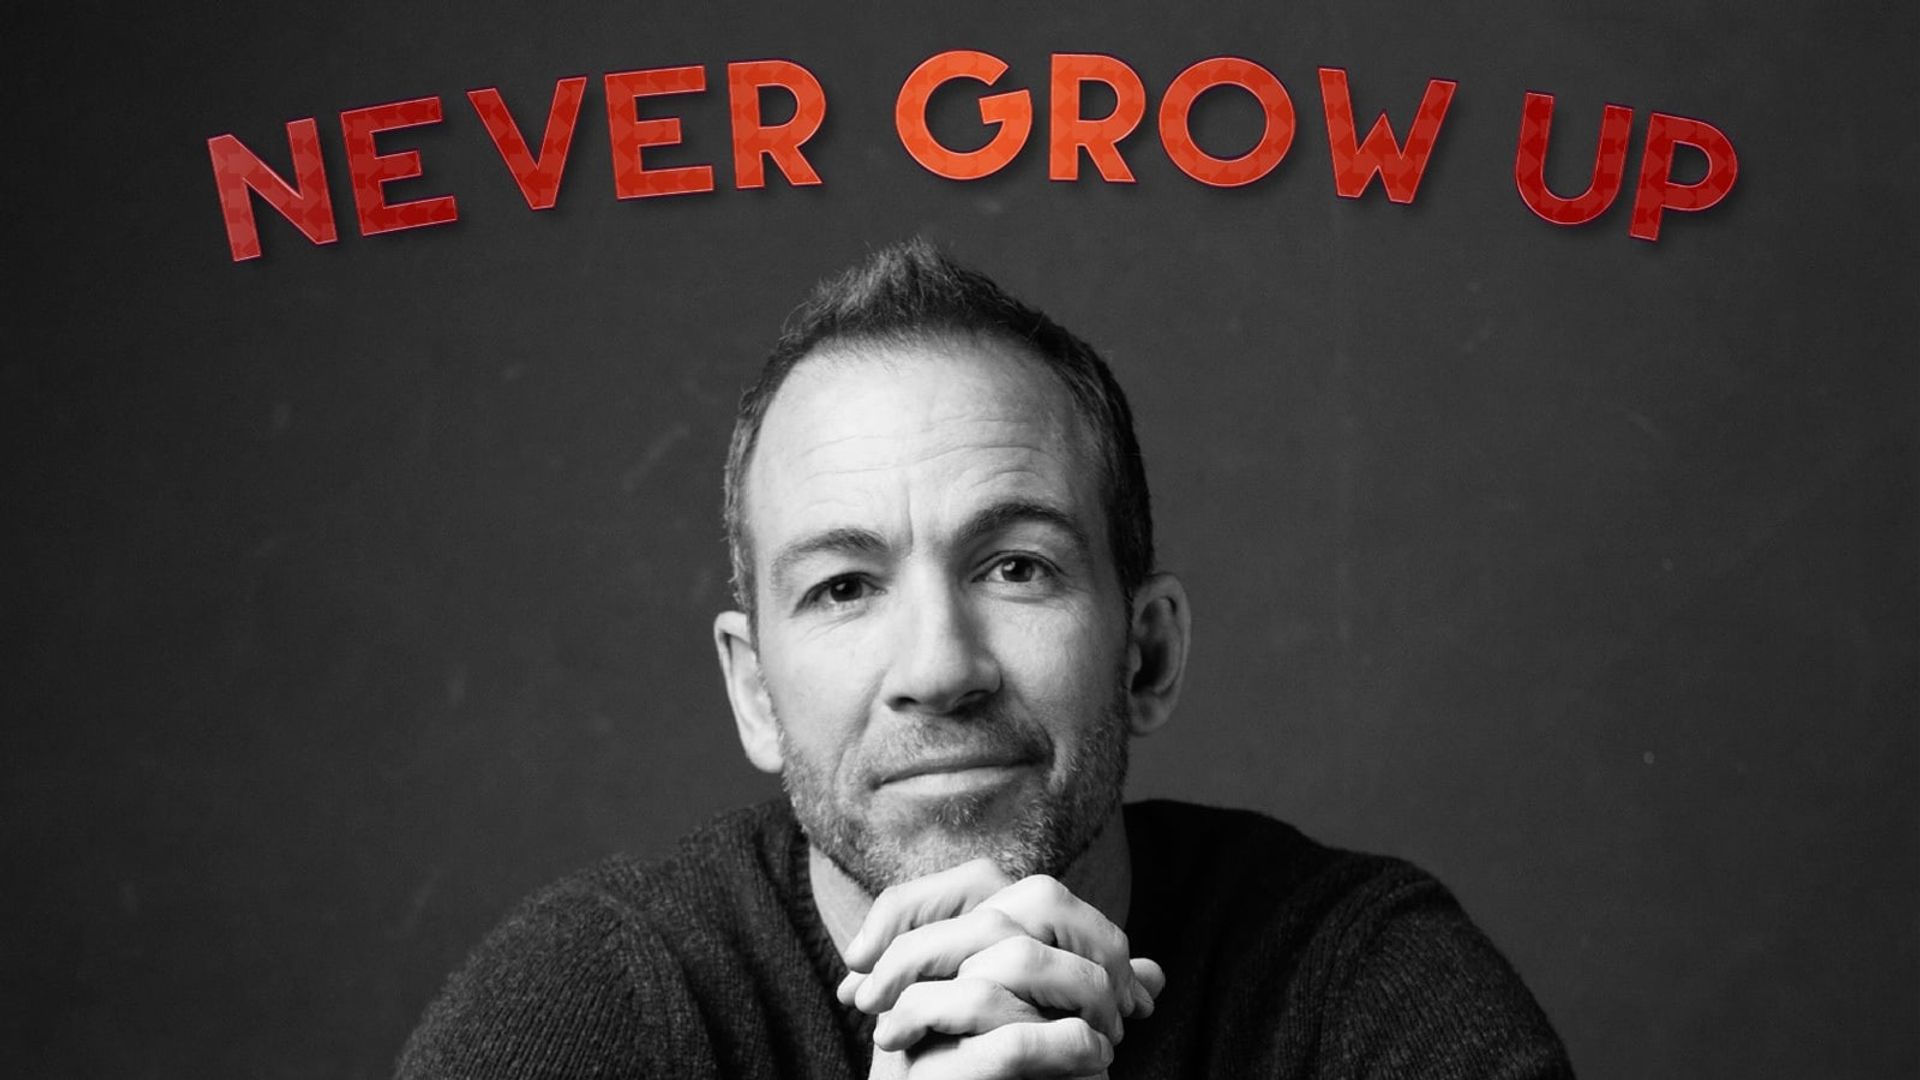 Bryan Callen: Never Grow Up background